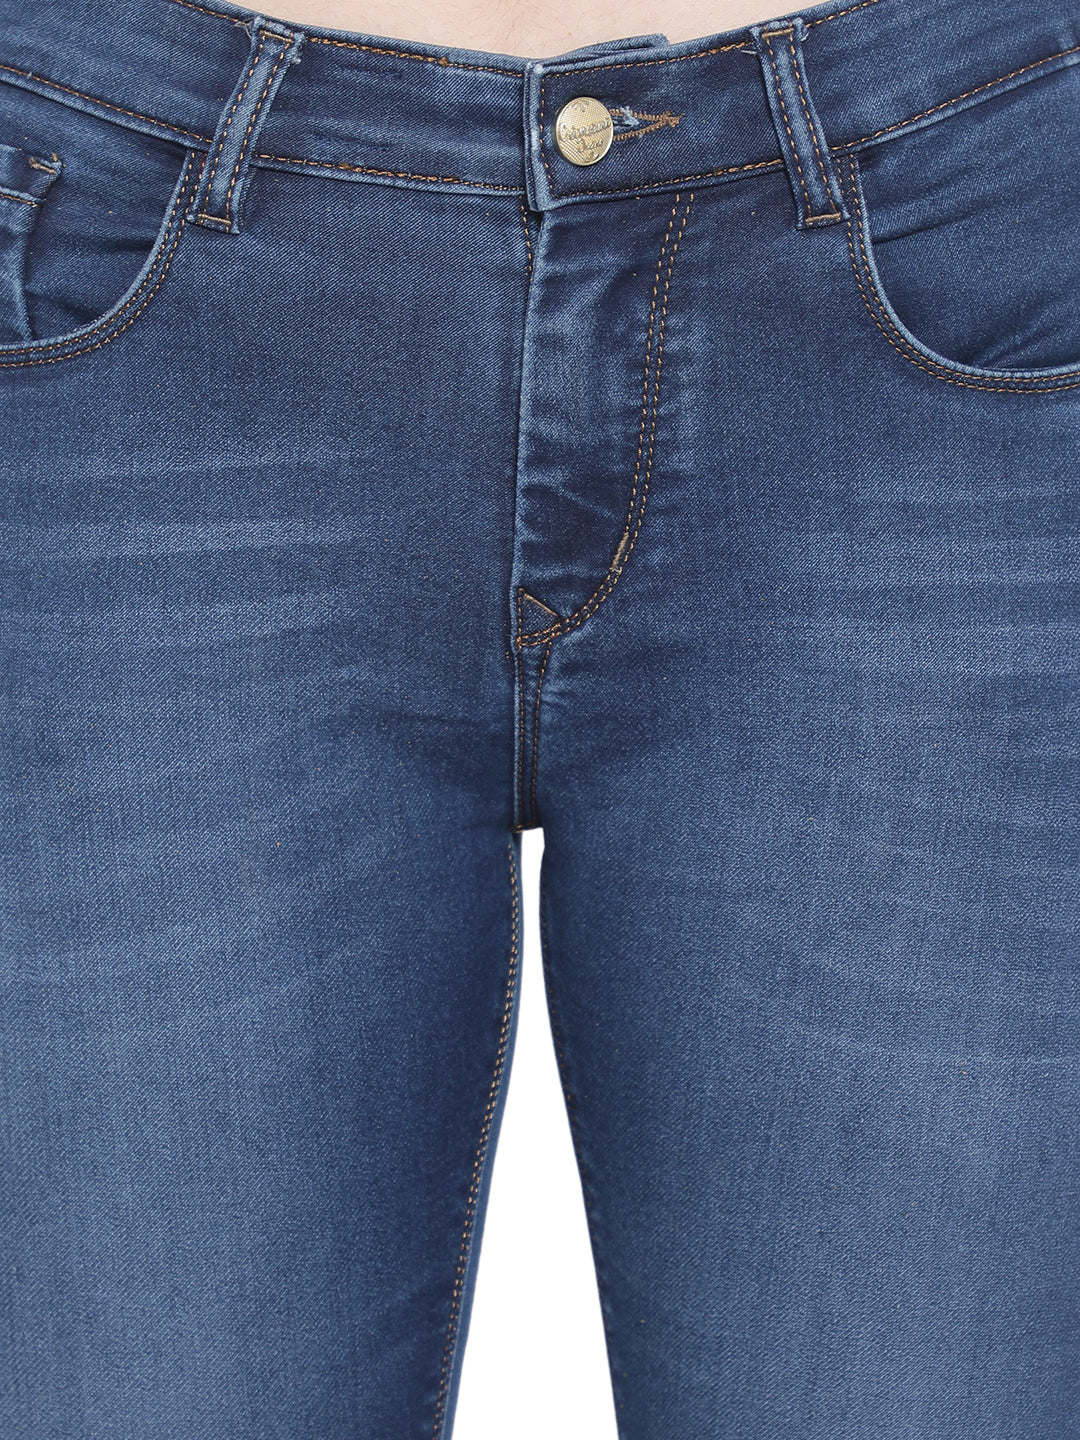 Blue Ankle Length Jeans-Women Jeans-Crimsoune Club